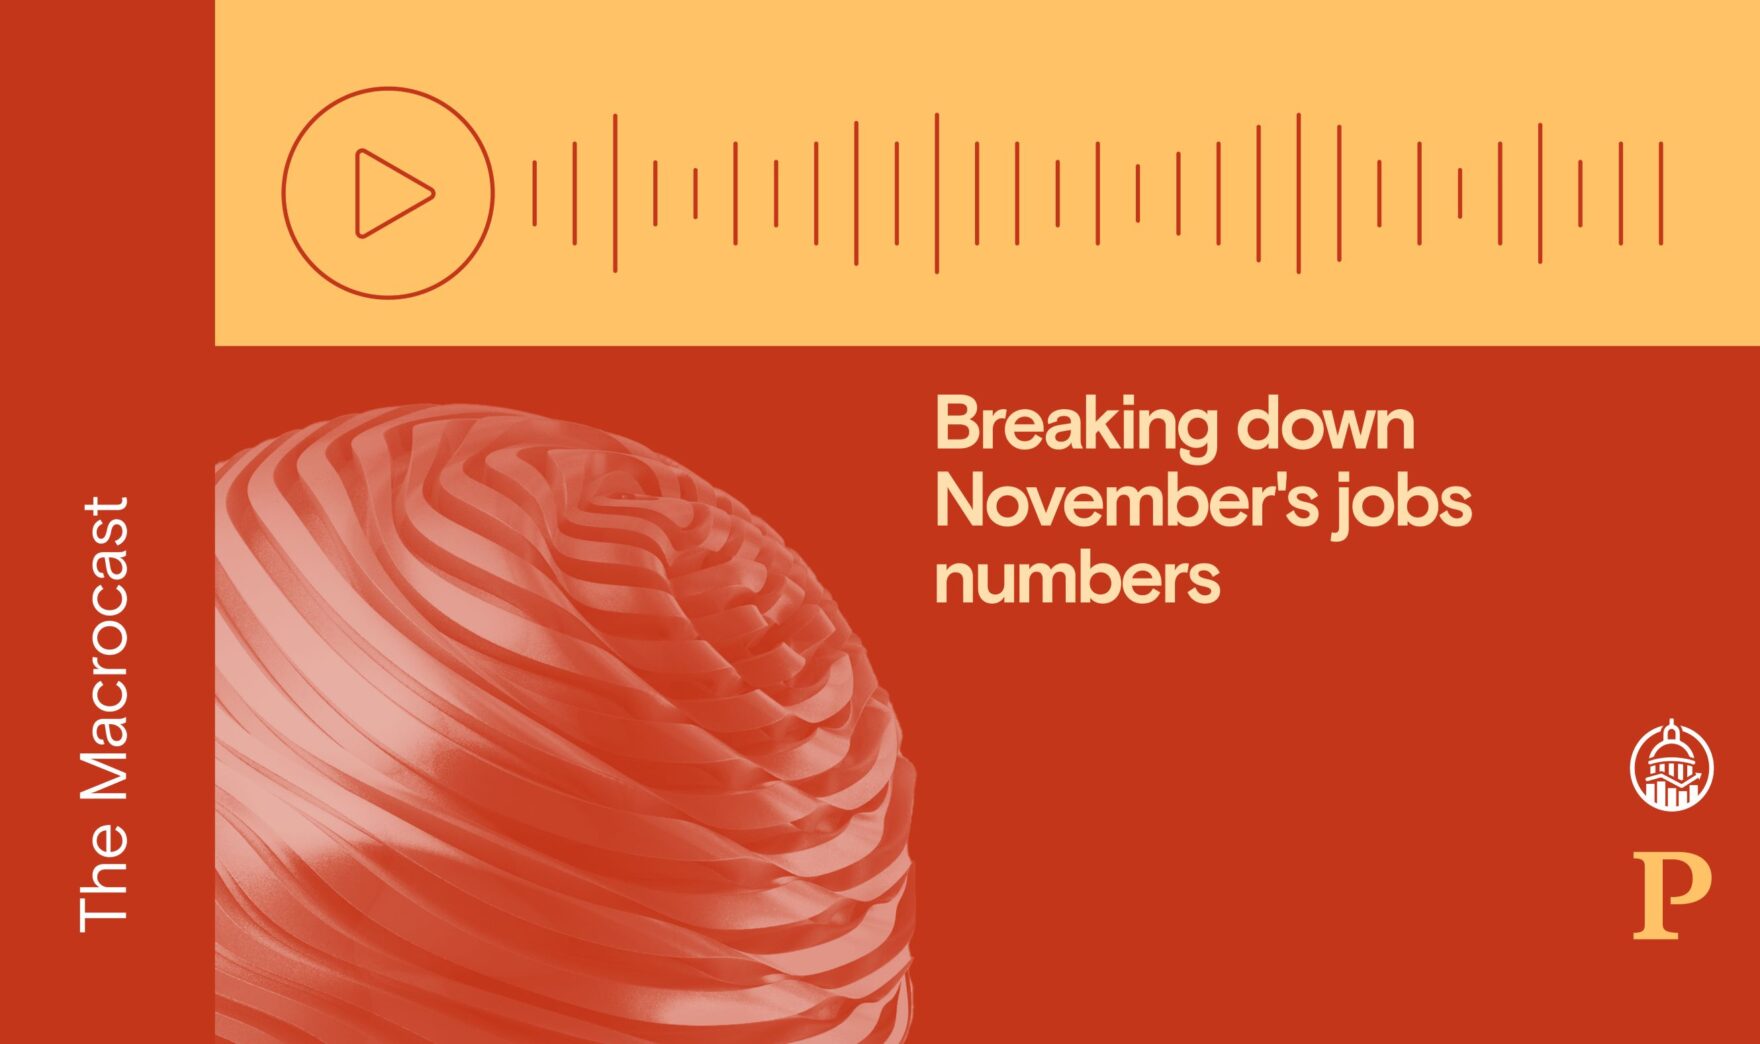 Macrocast: Breaking down November’s jobs numbers